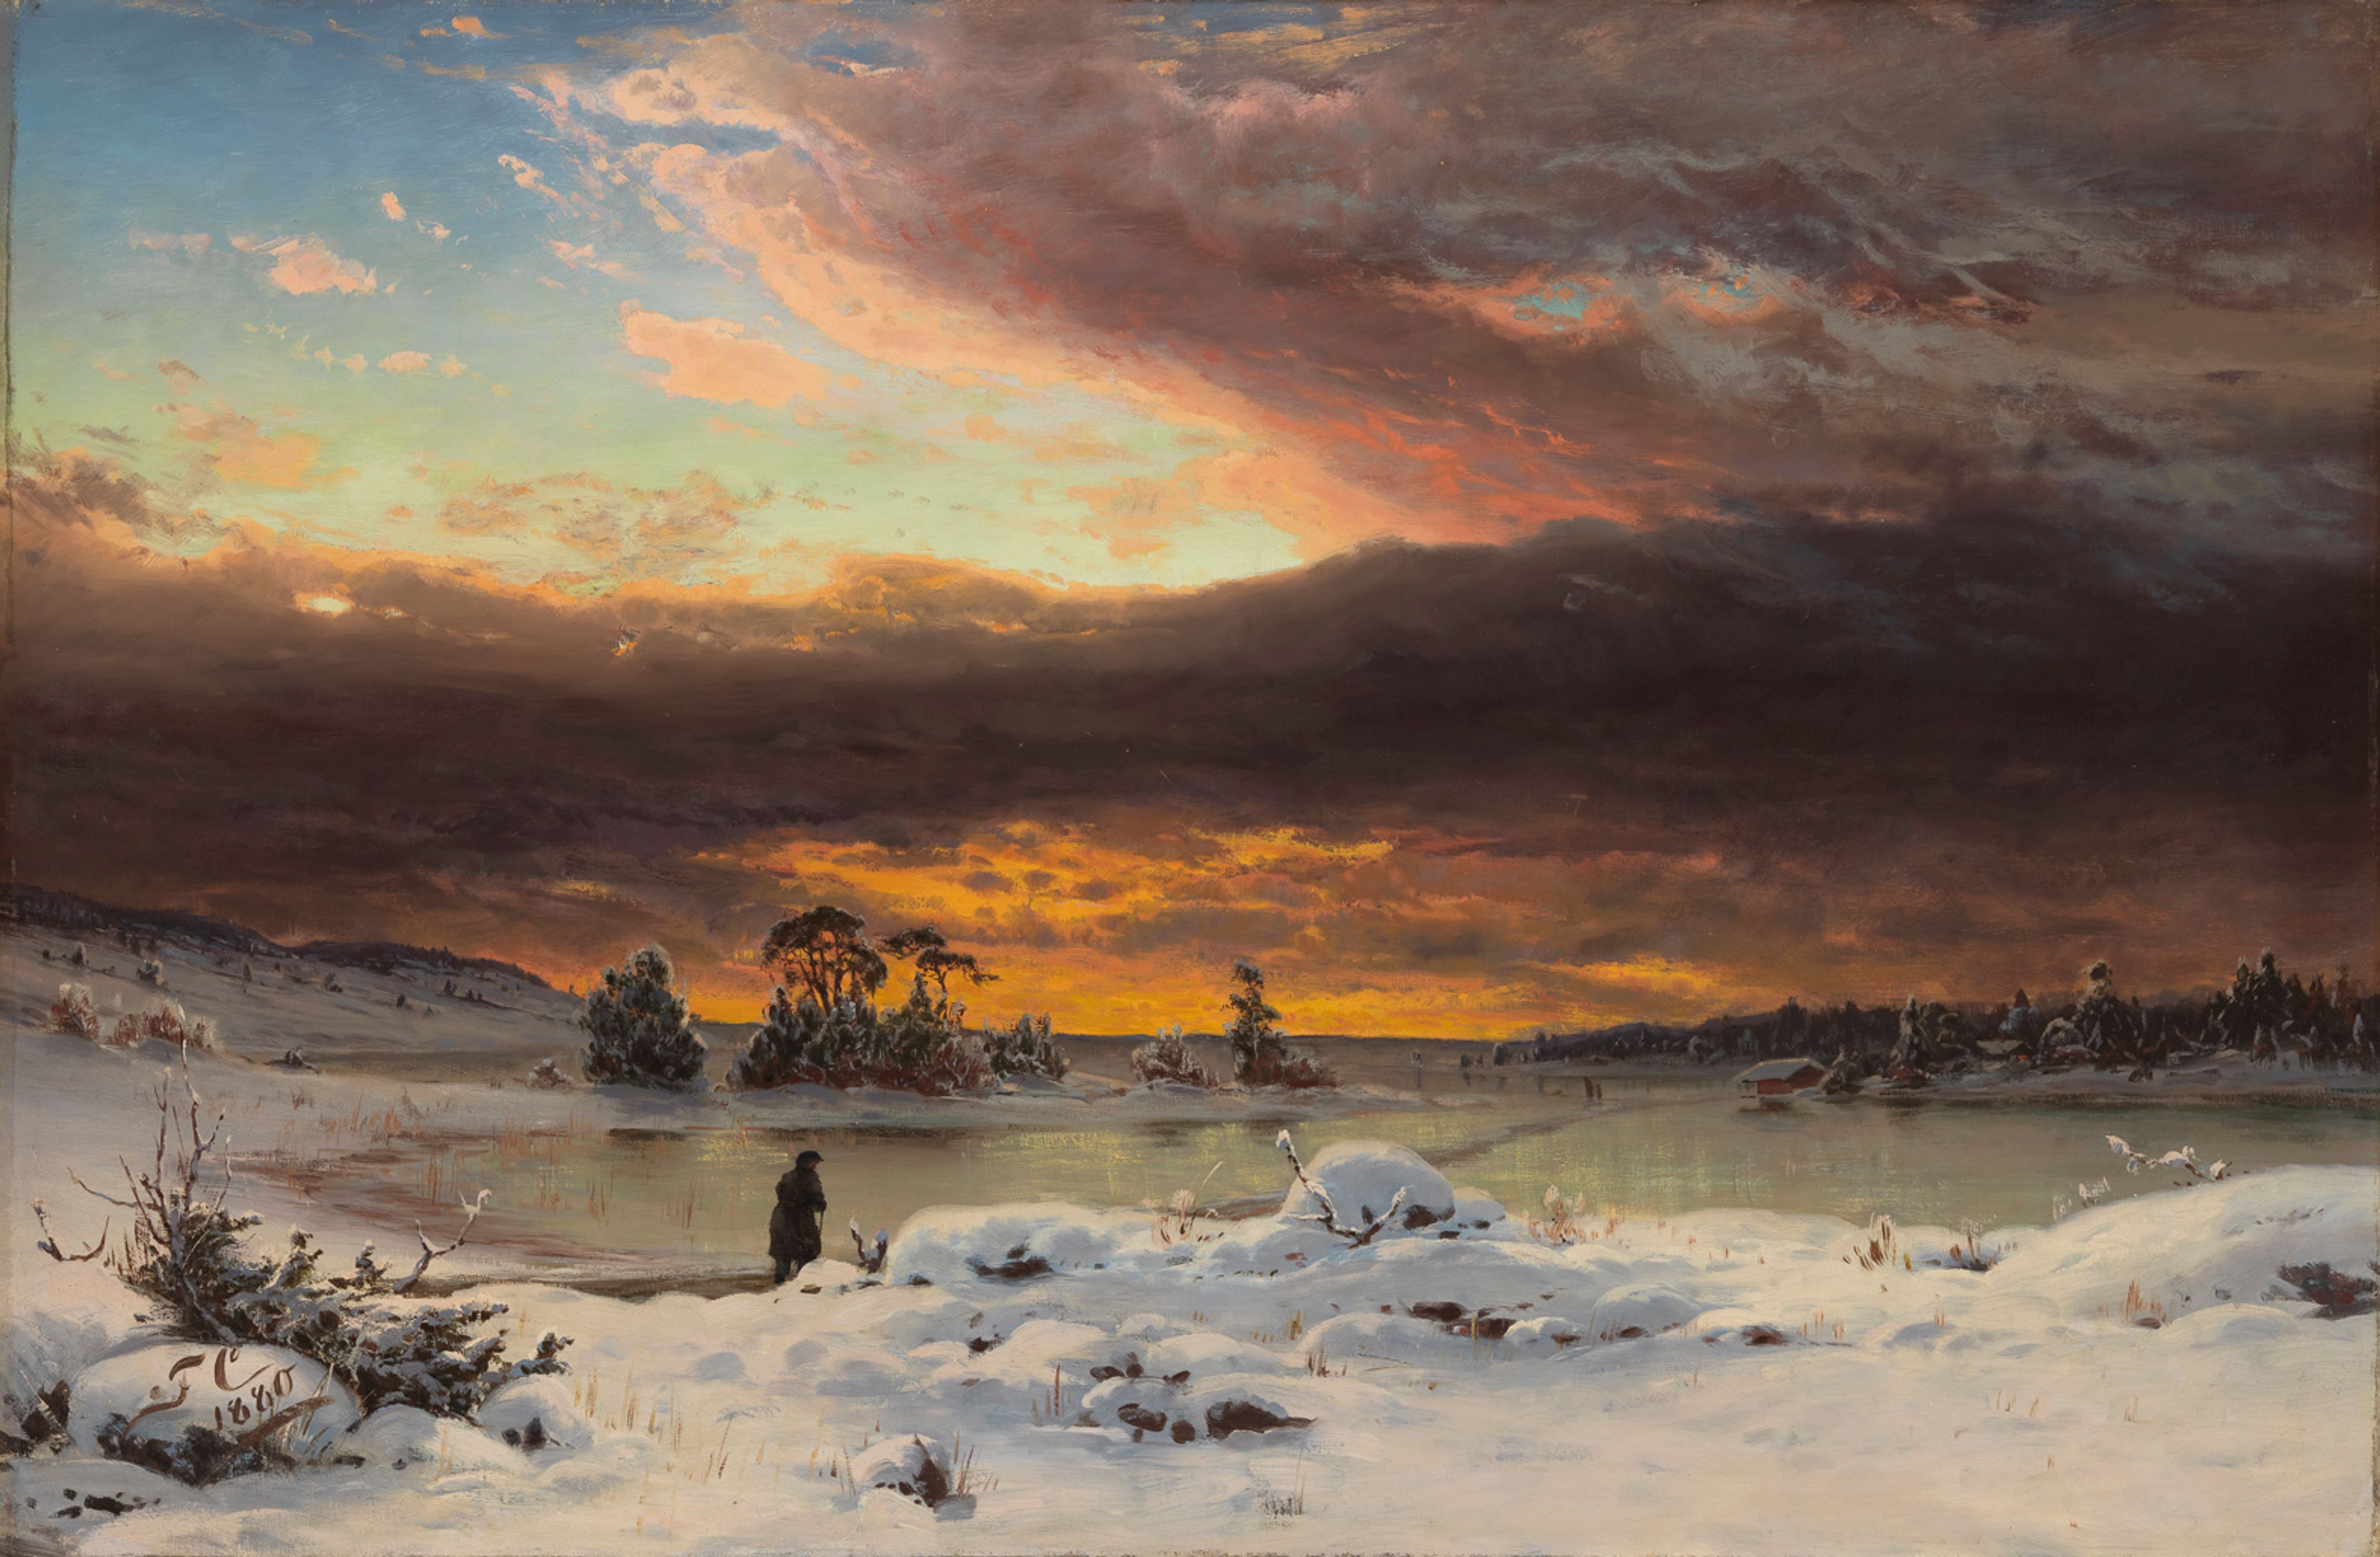 冬季景观，傍晚气氛 by 范妮· 丘尔伯格 - 1880 - 73.5 x 105 cm 芬兰国家美术馆